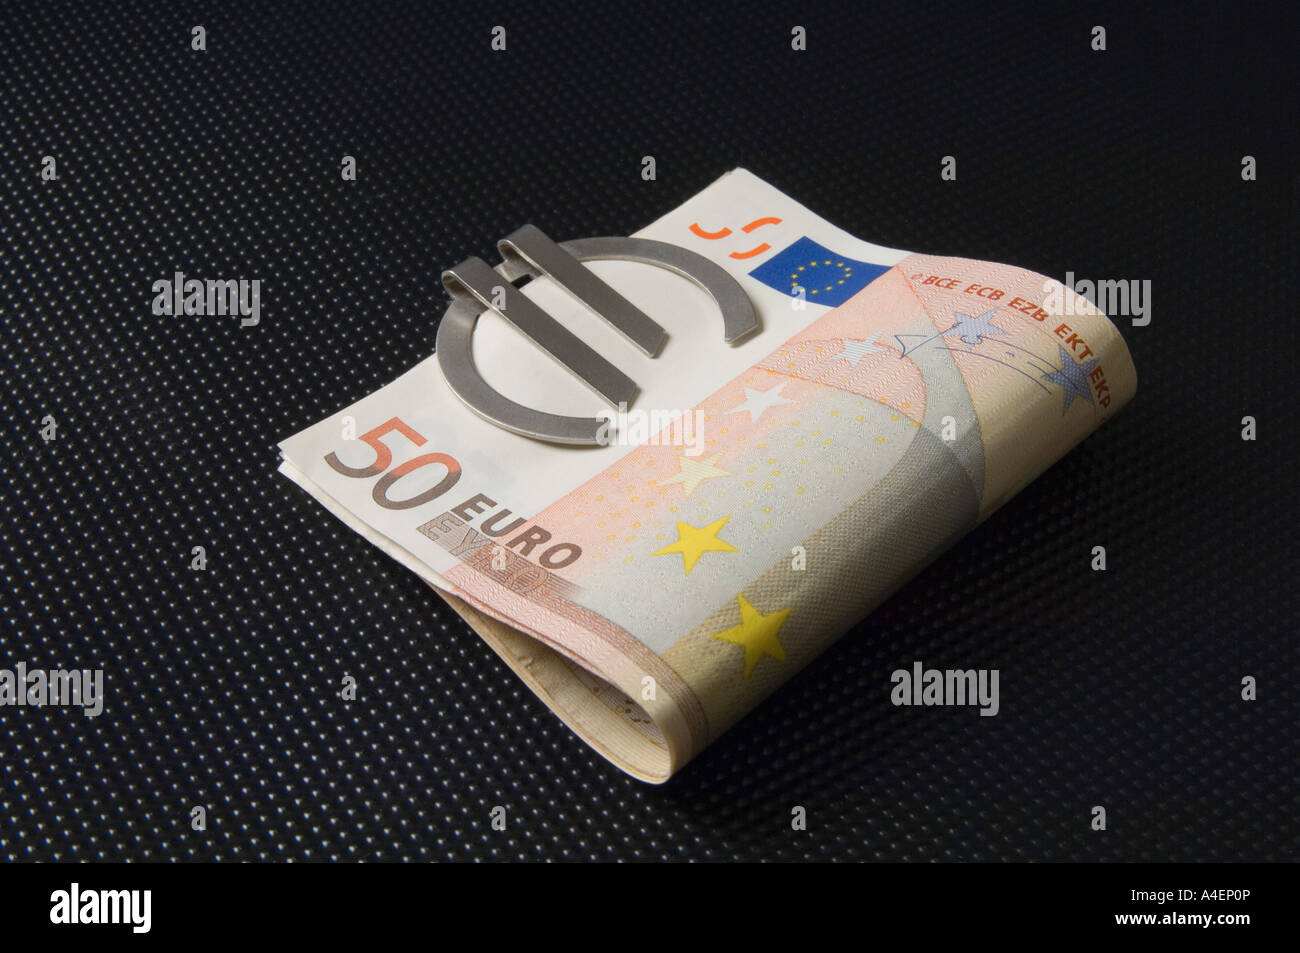 Un collier d'argent sous la forme d'un symbole de l'Euro maintenant 50 billets Banque D'Images